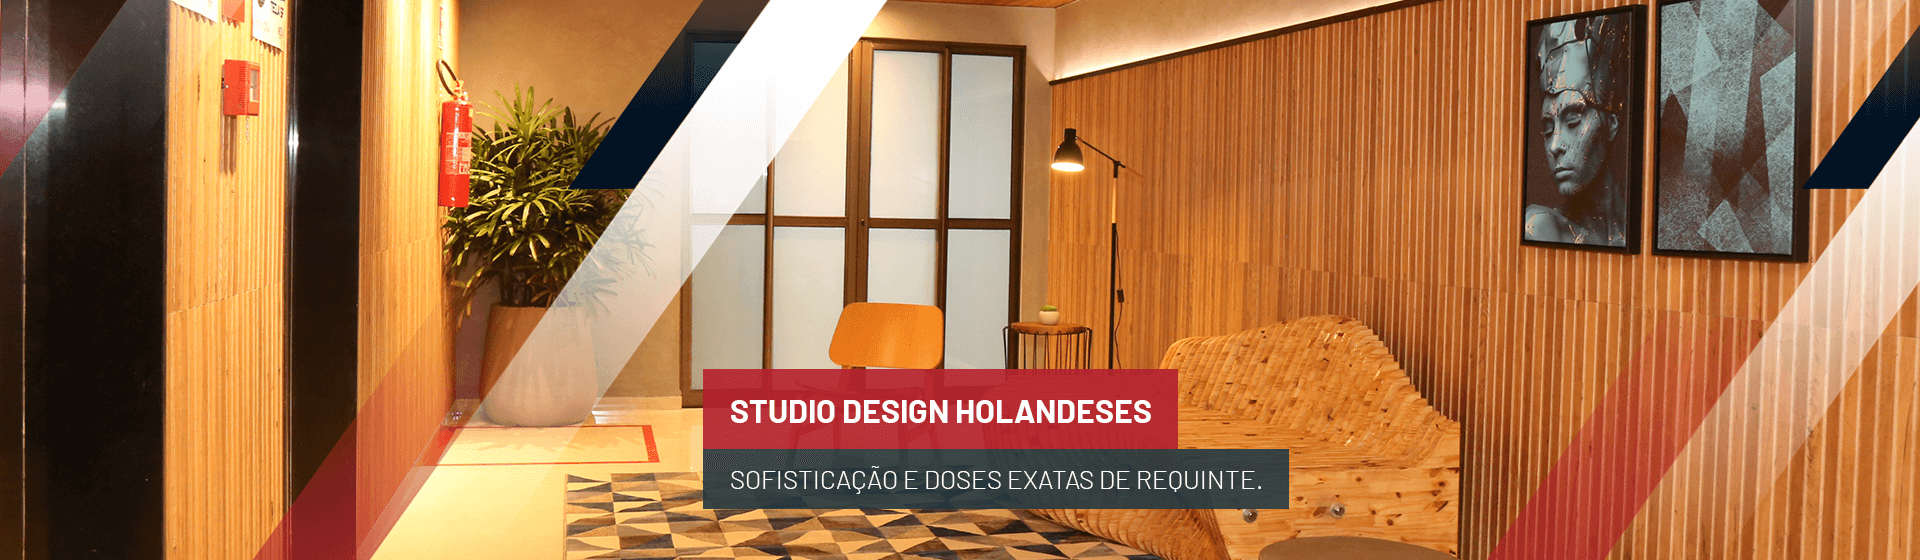 Edifício Studio Design Holandeses